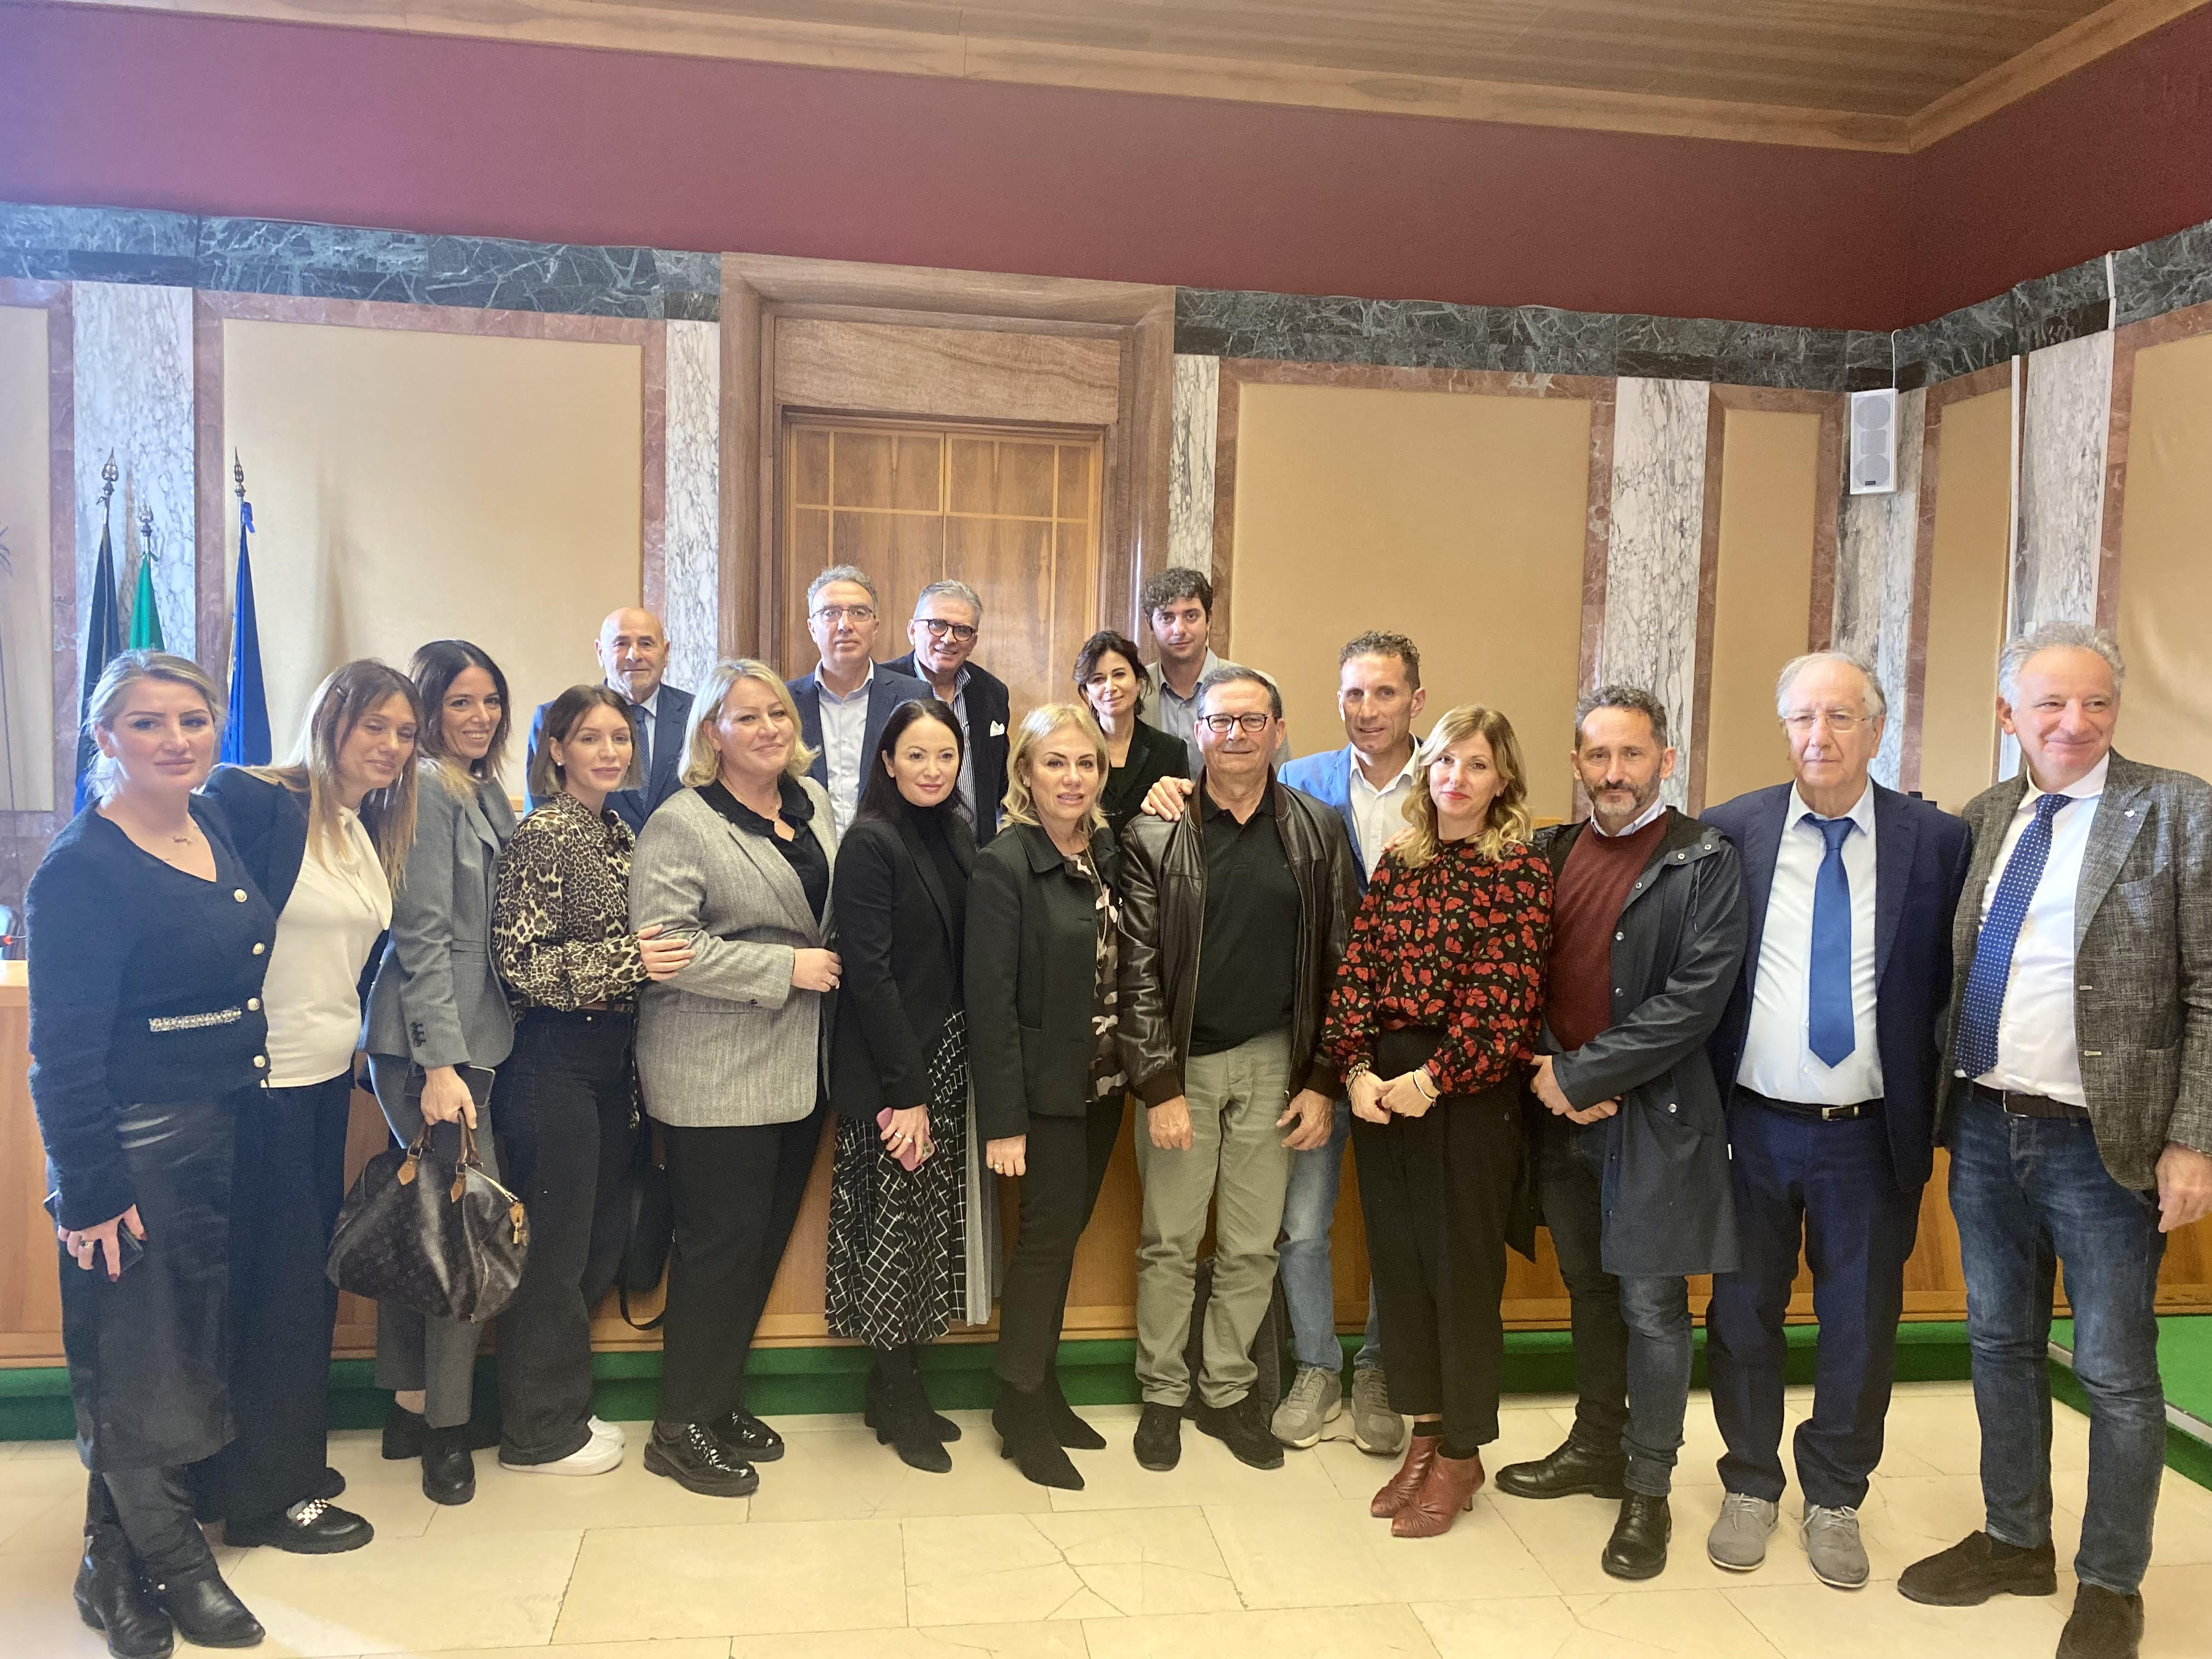 L’onorevole Martina Semenzato incontra Sindaco, assessori e consiglieri di Latina